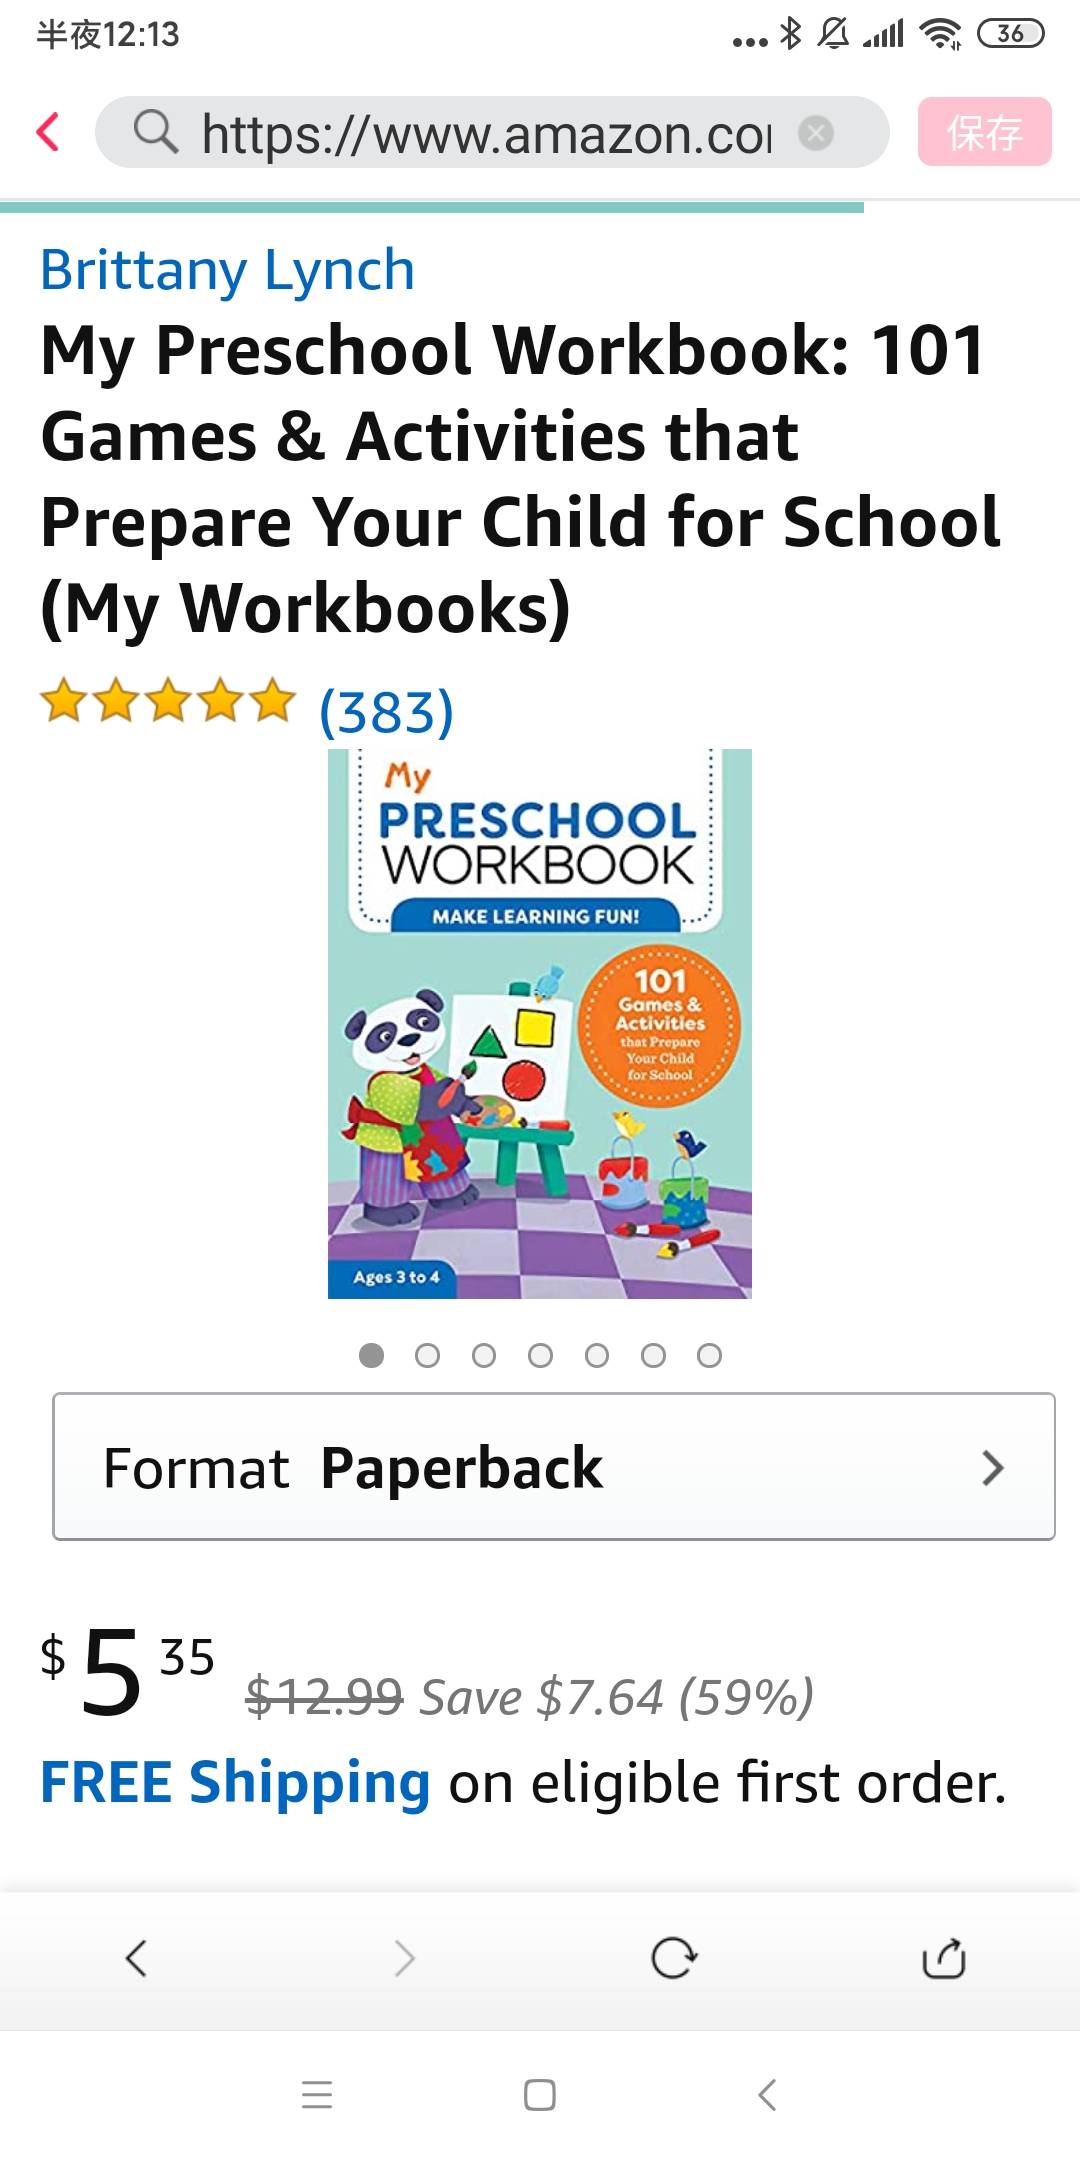 My Preschool Workbook: 101 Games & Activities that Prepare Your Child for School练习册